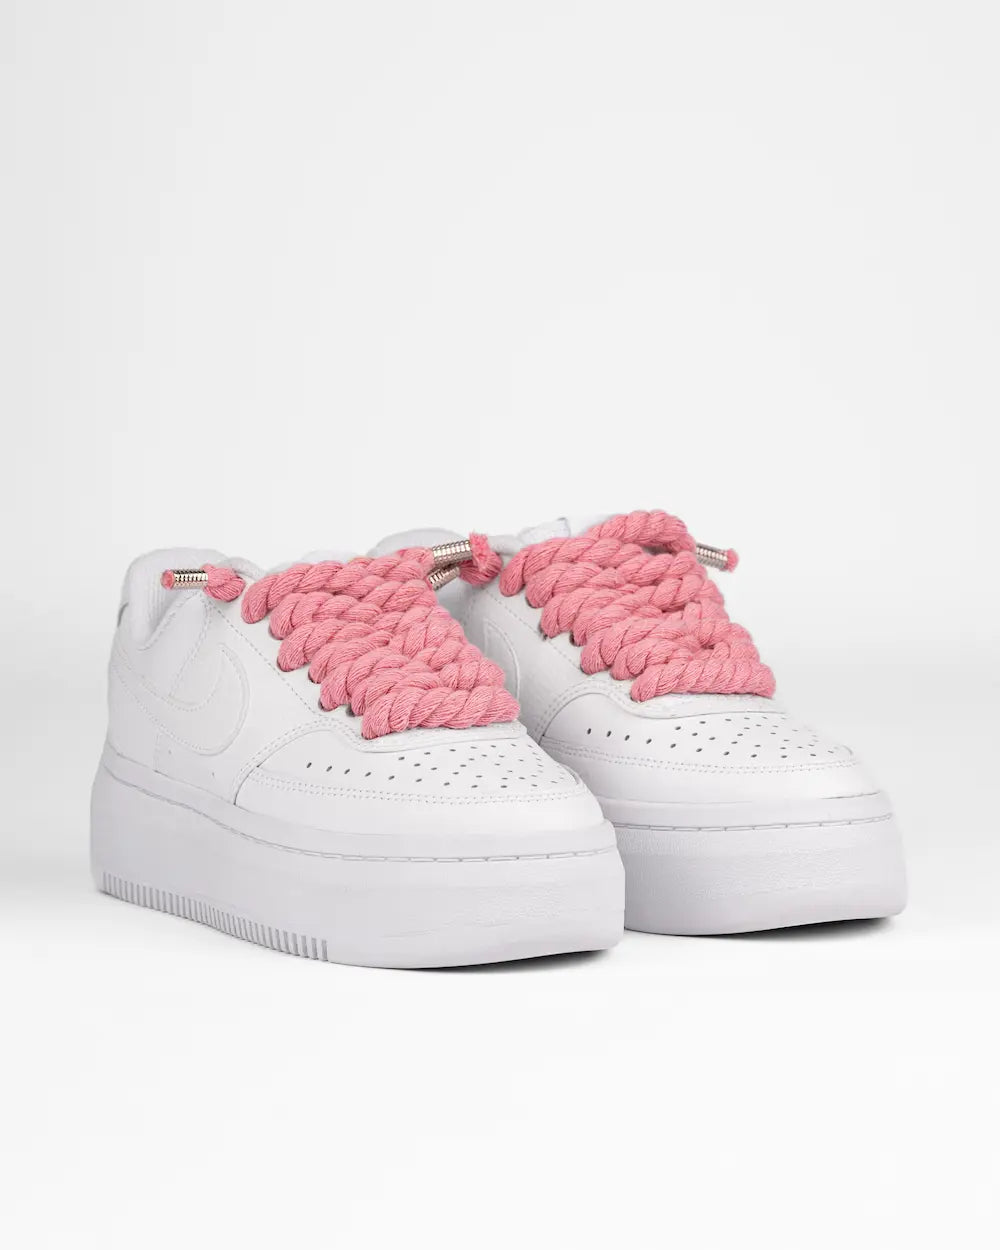 Nike Court Vision Platform personalizzata con lacci in corda rosa pastello